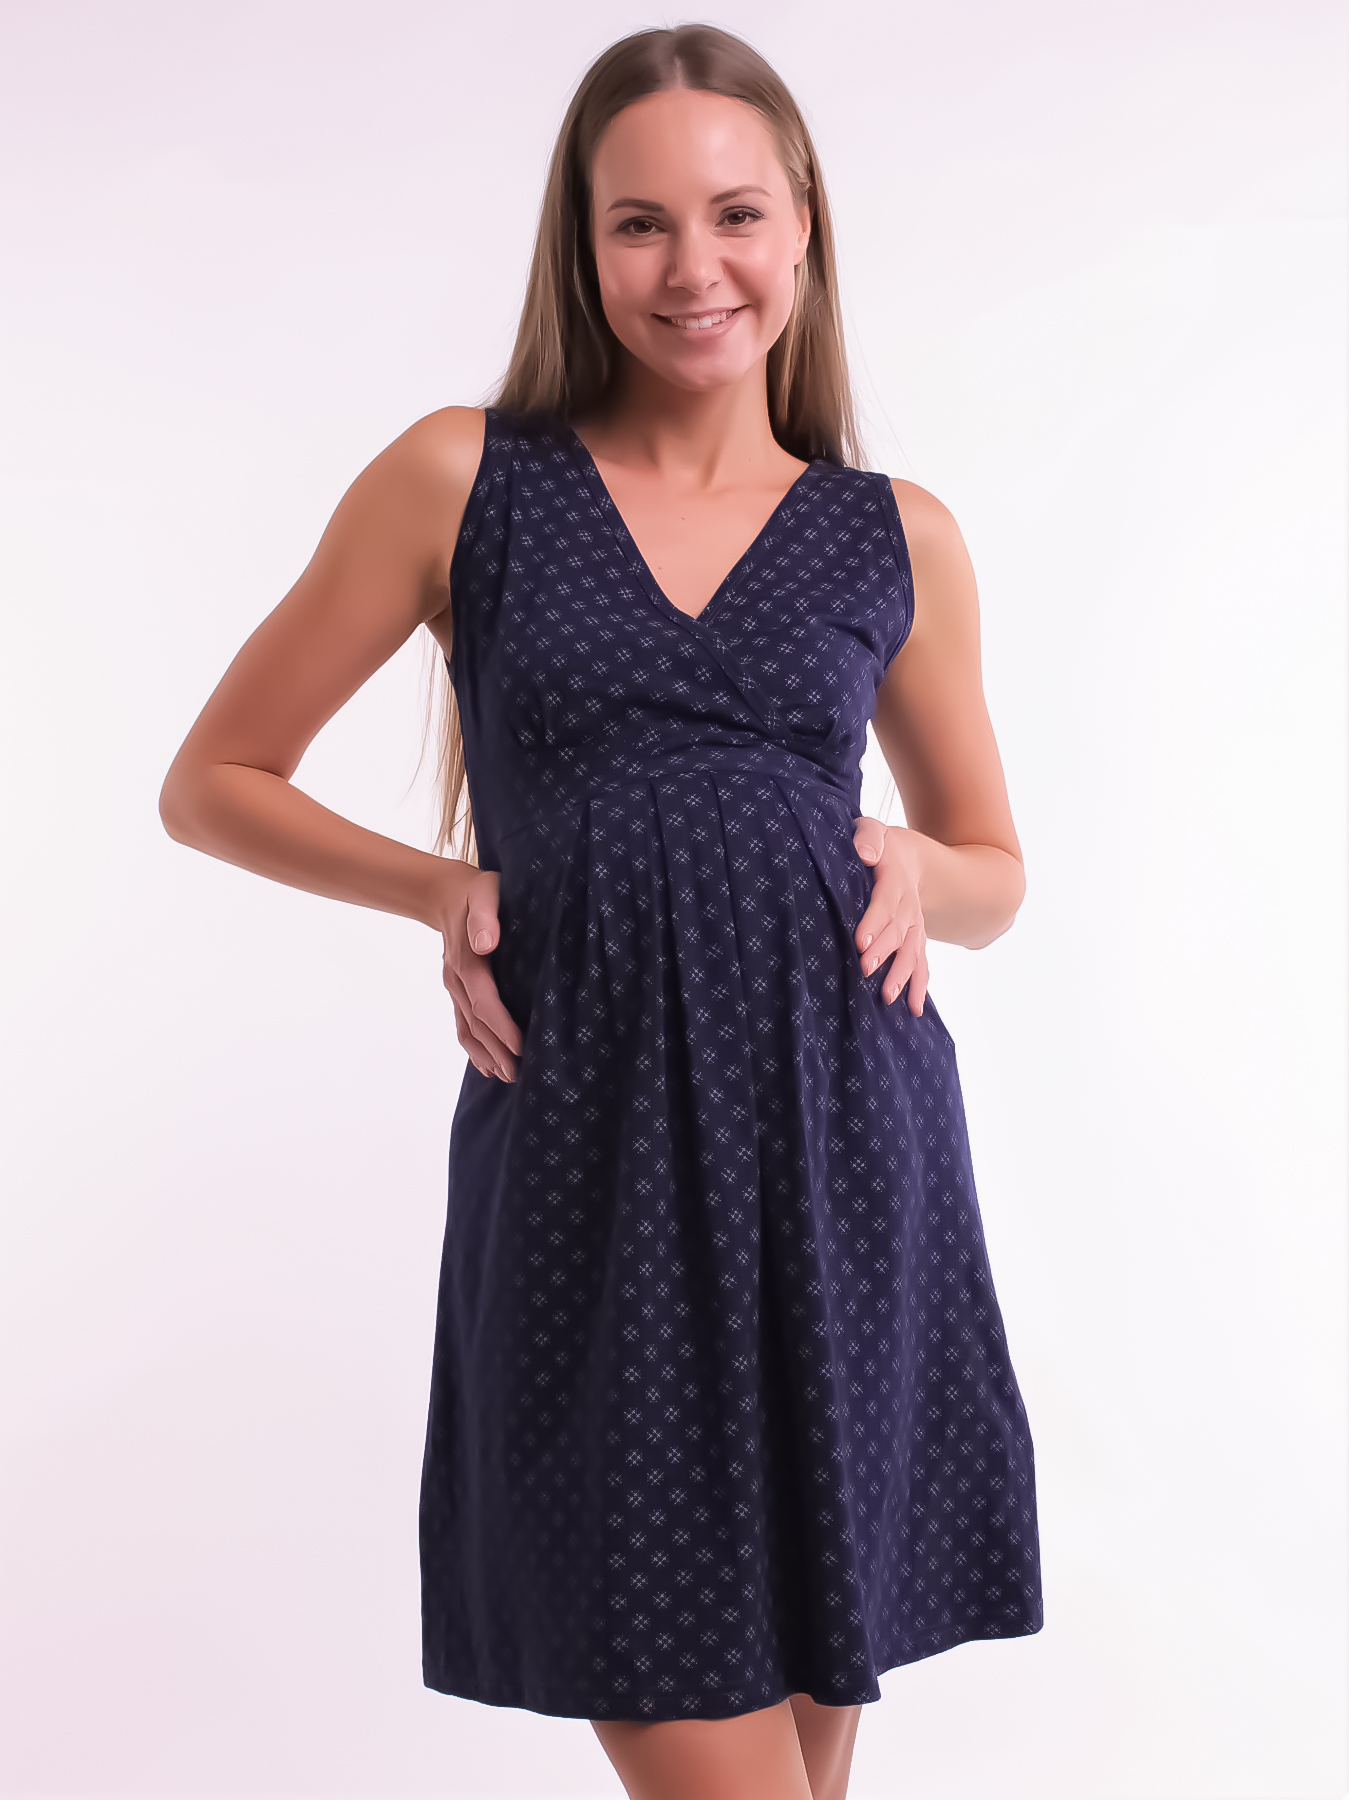 Сорочка для беременных и кормящих арт. 280670 синяя